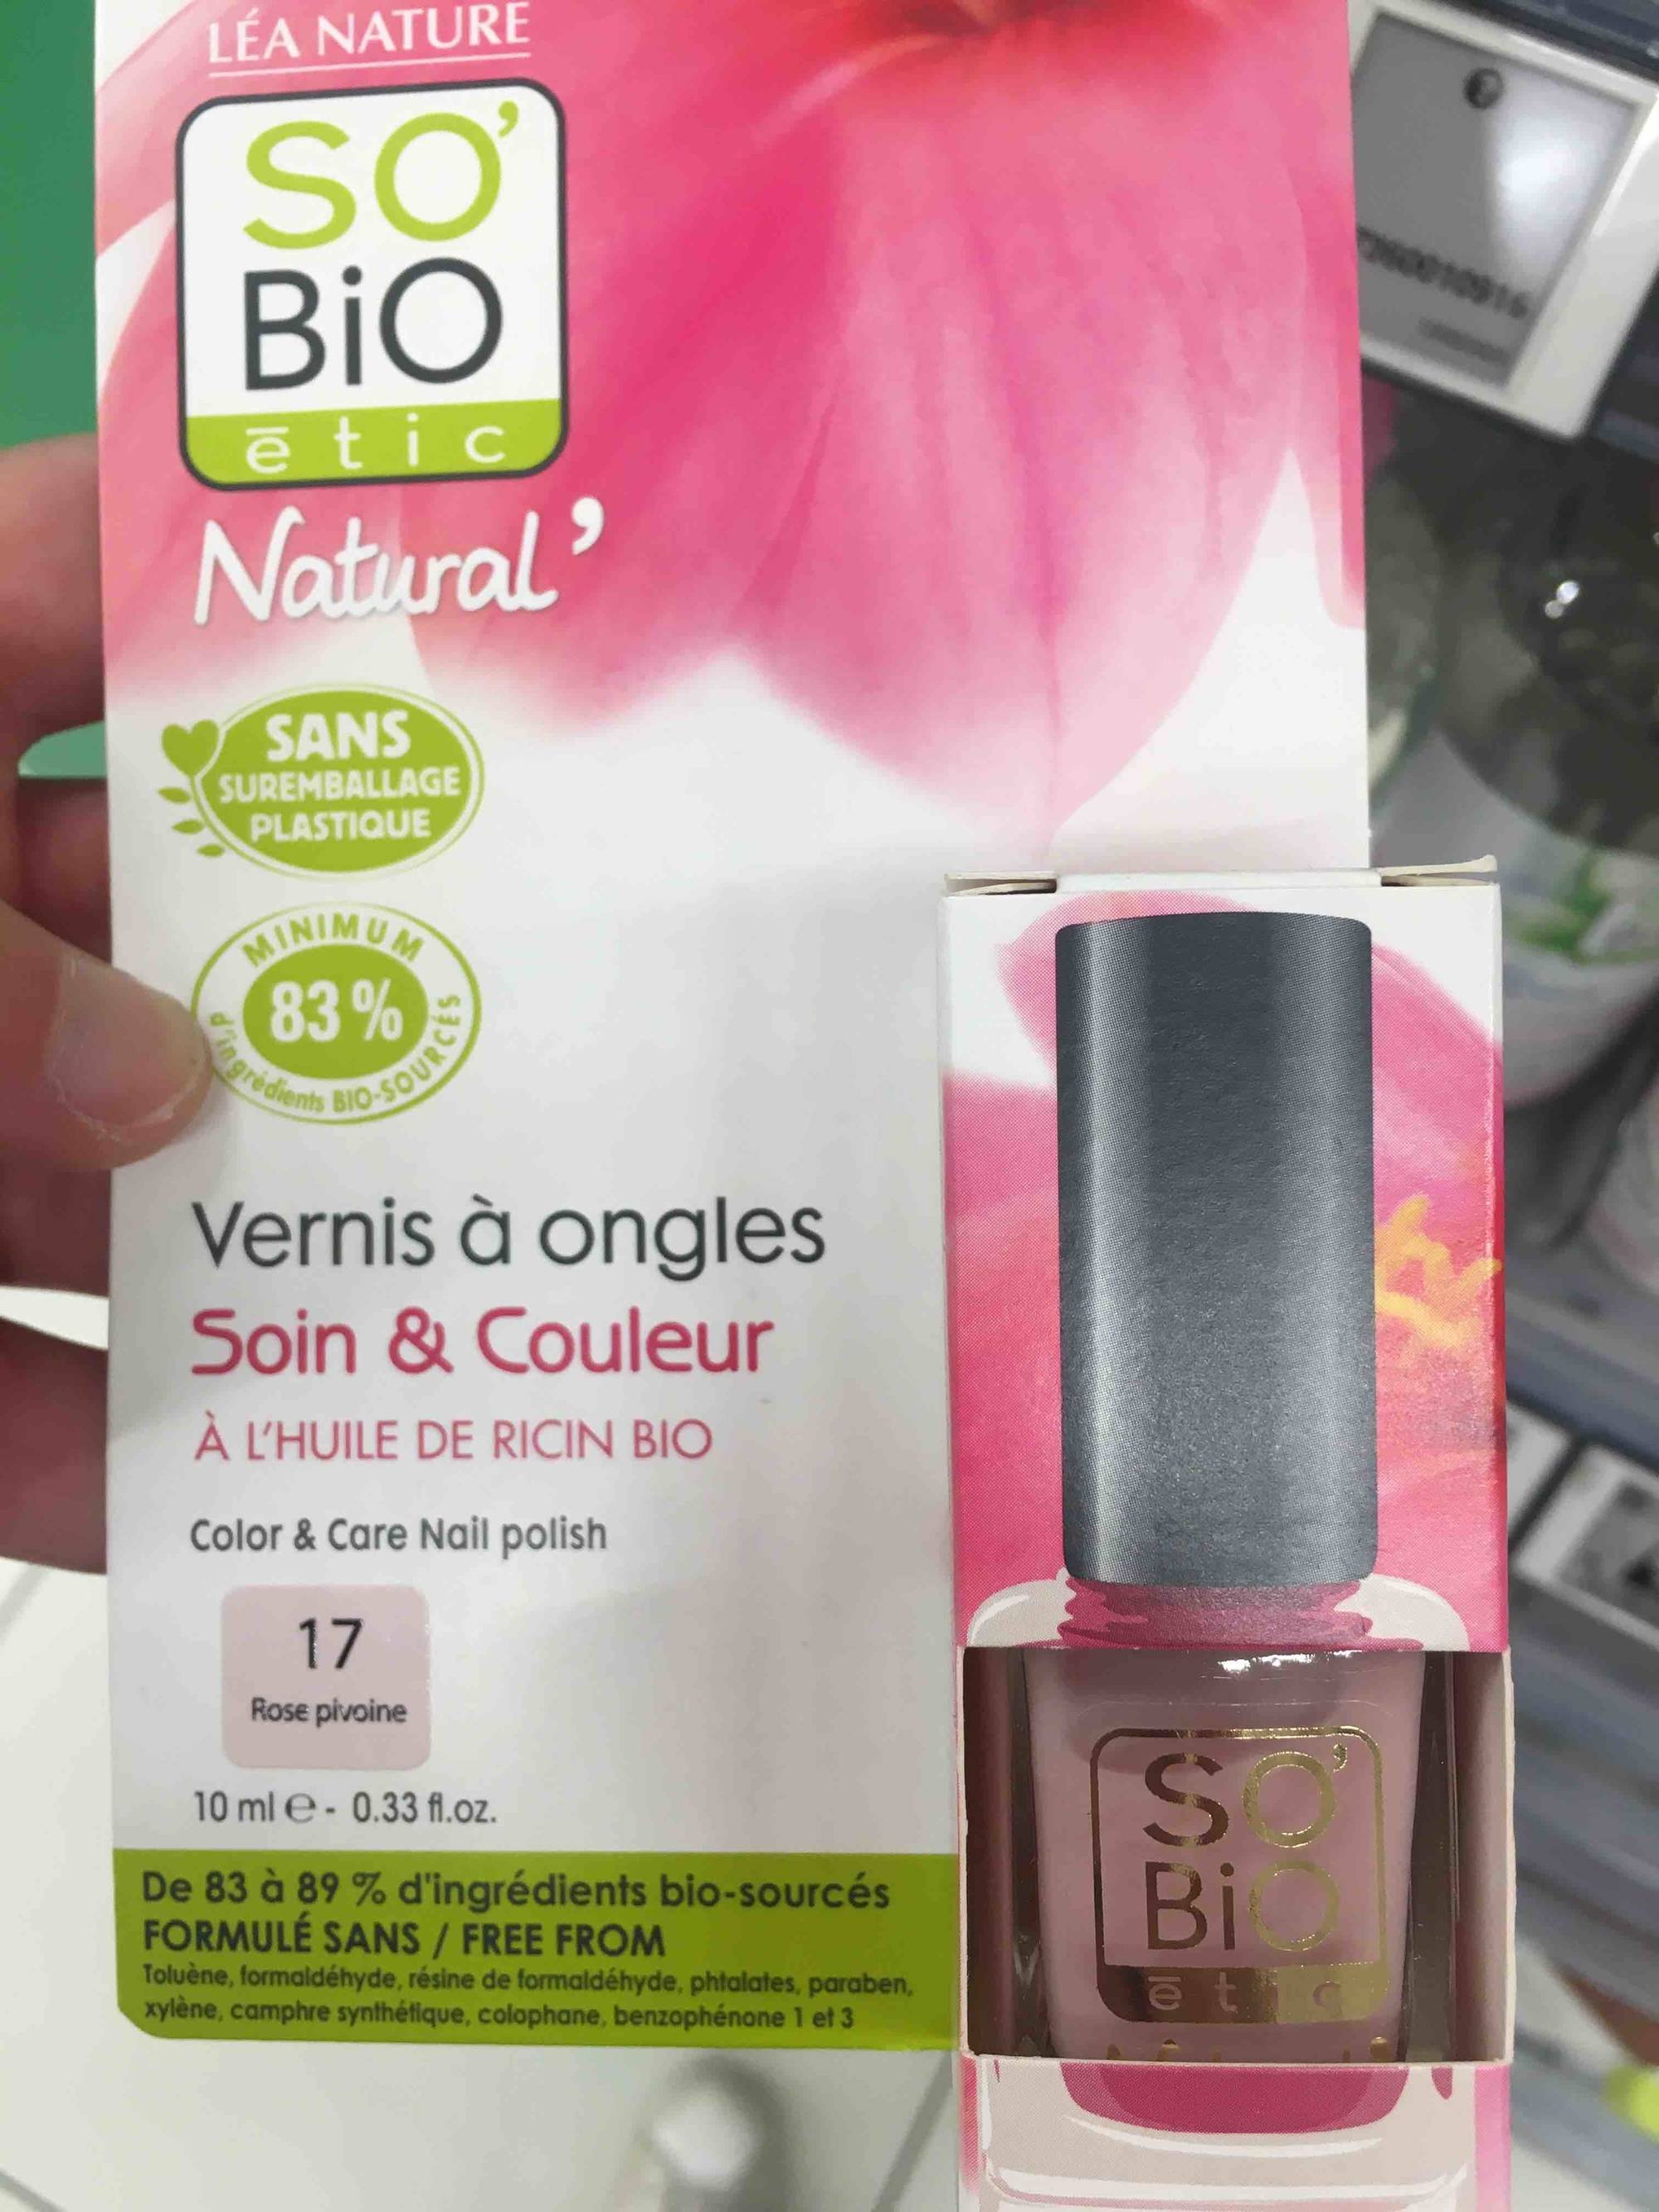 SO'BIO ÉTIC - Natural' - Vernis à ongles soin & couleur 17 rose pivoine